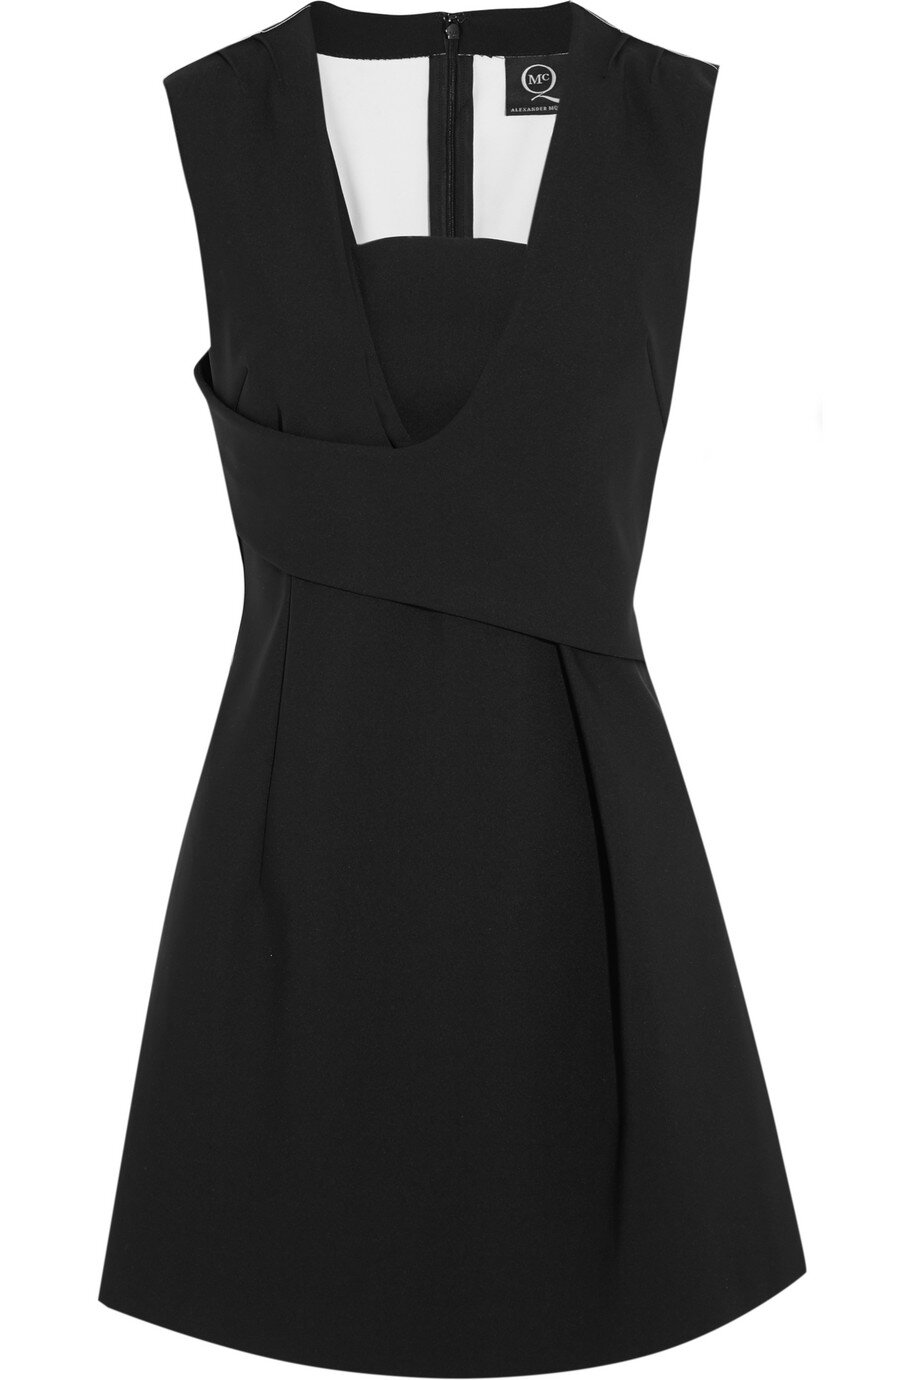 McQ Alexander McQueen Stretch-Scuba Mini Dress in Black.jpg